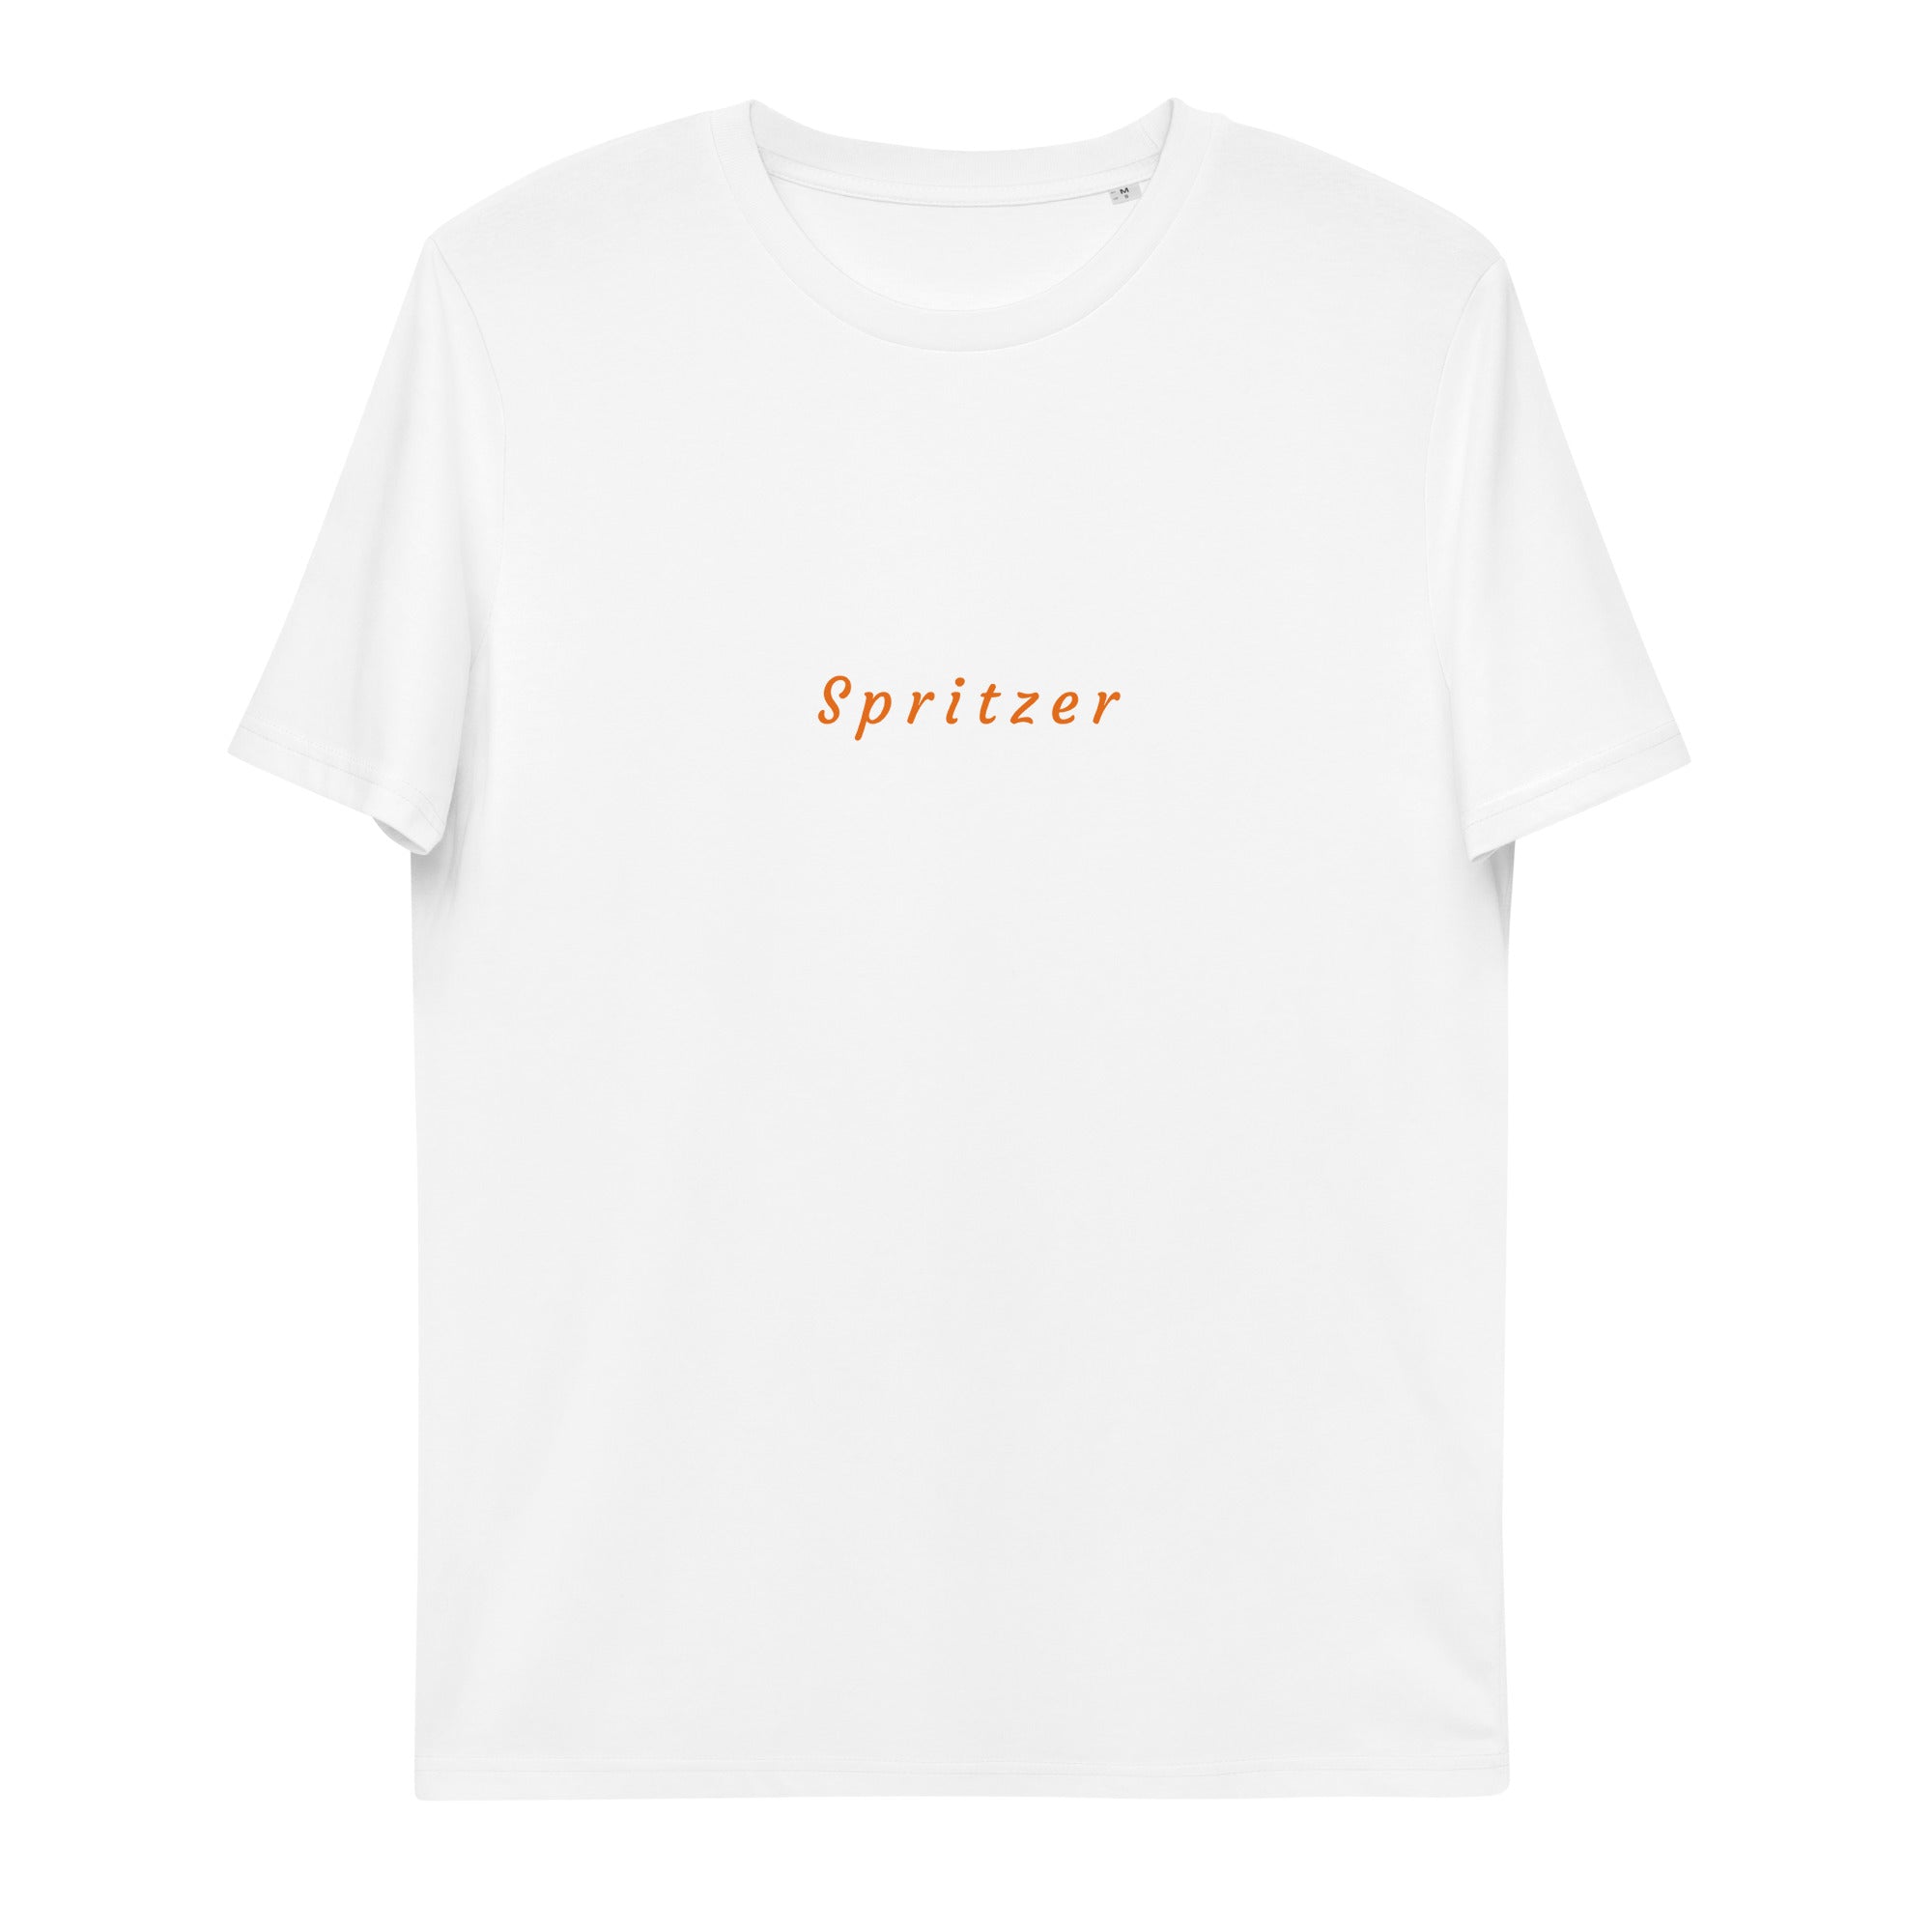 Spritzer Unisex Beach Shirt